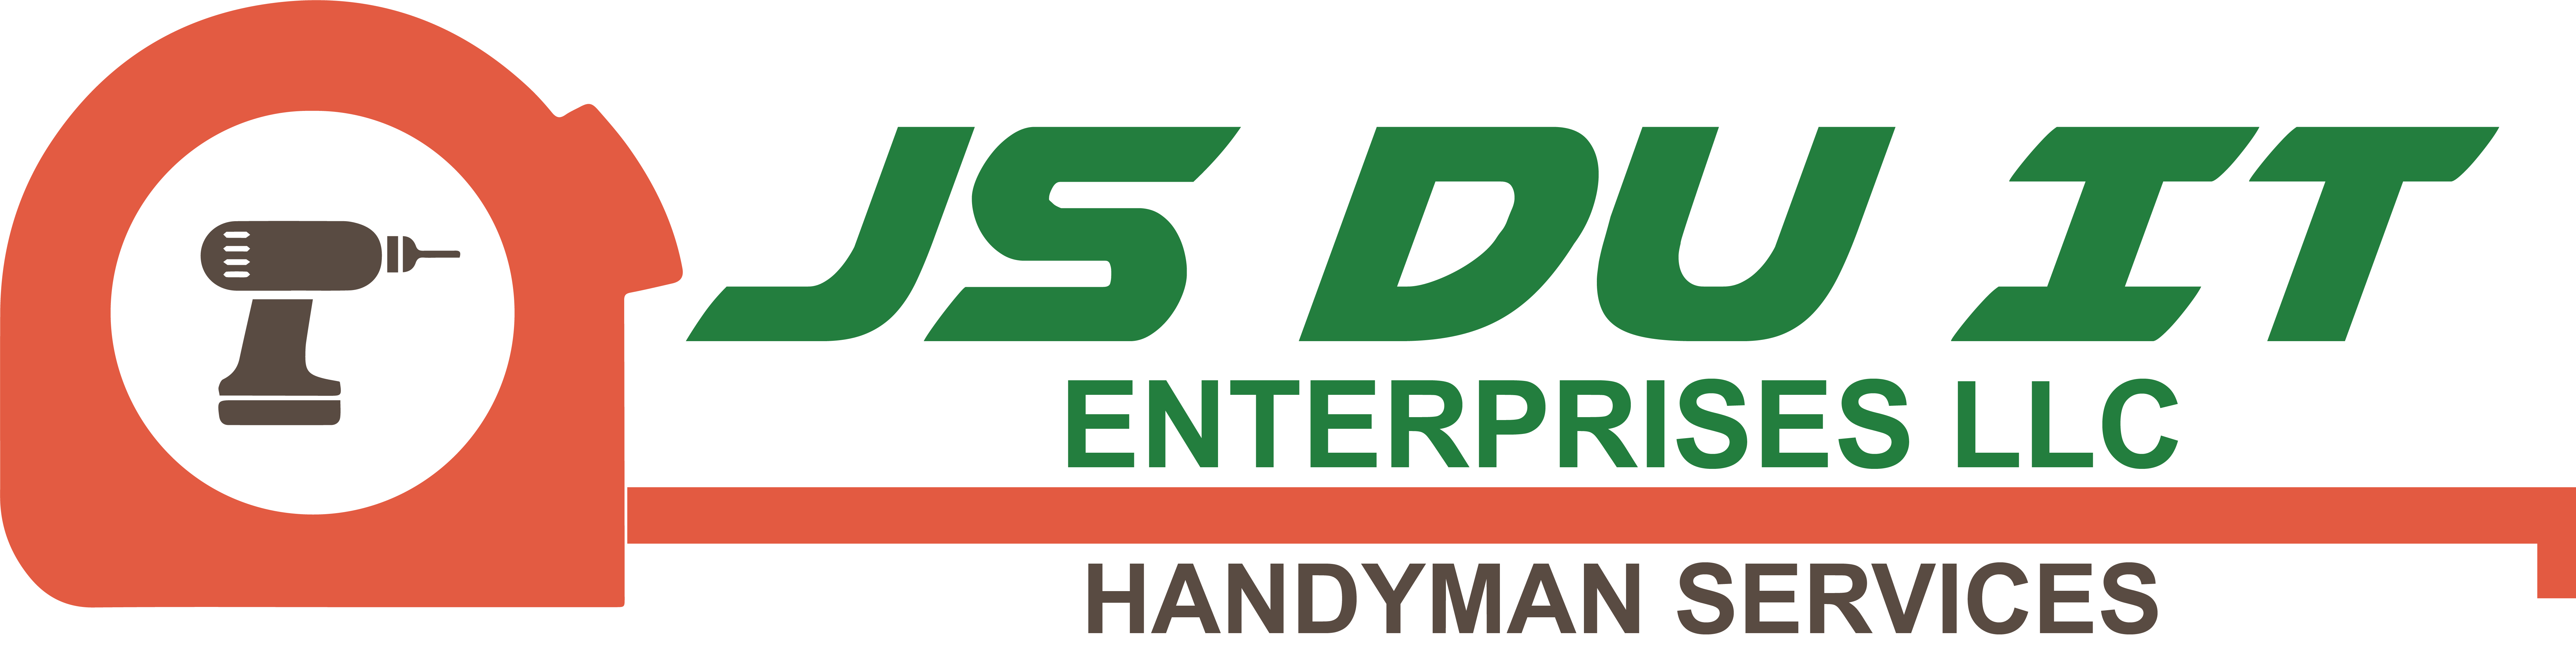 JS DU IT Enterprises